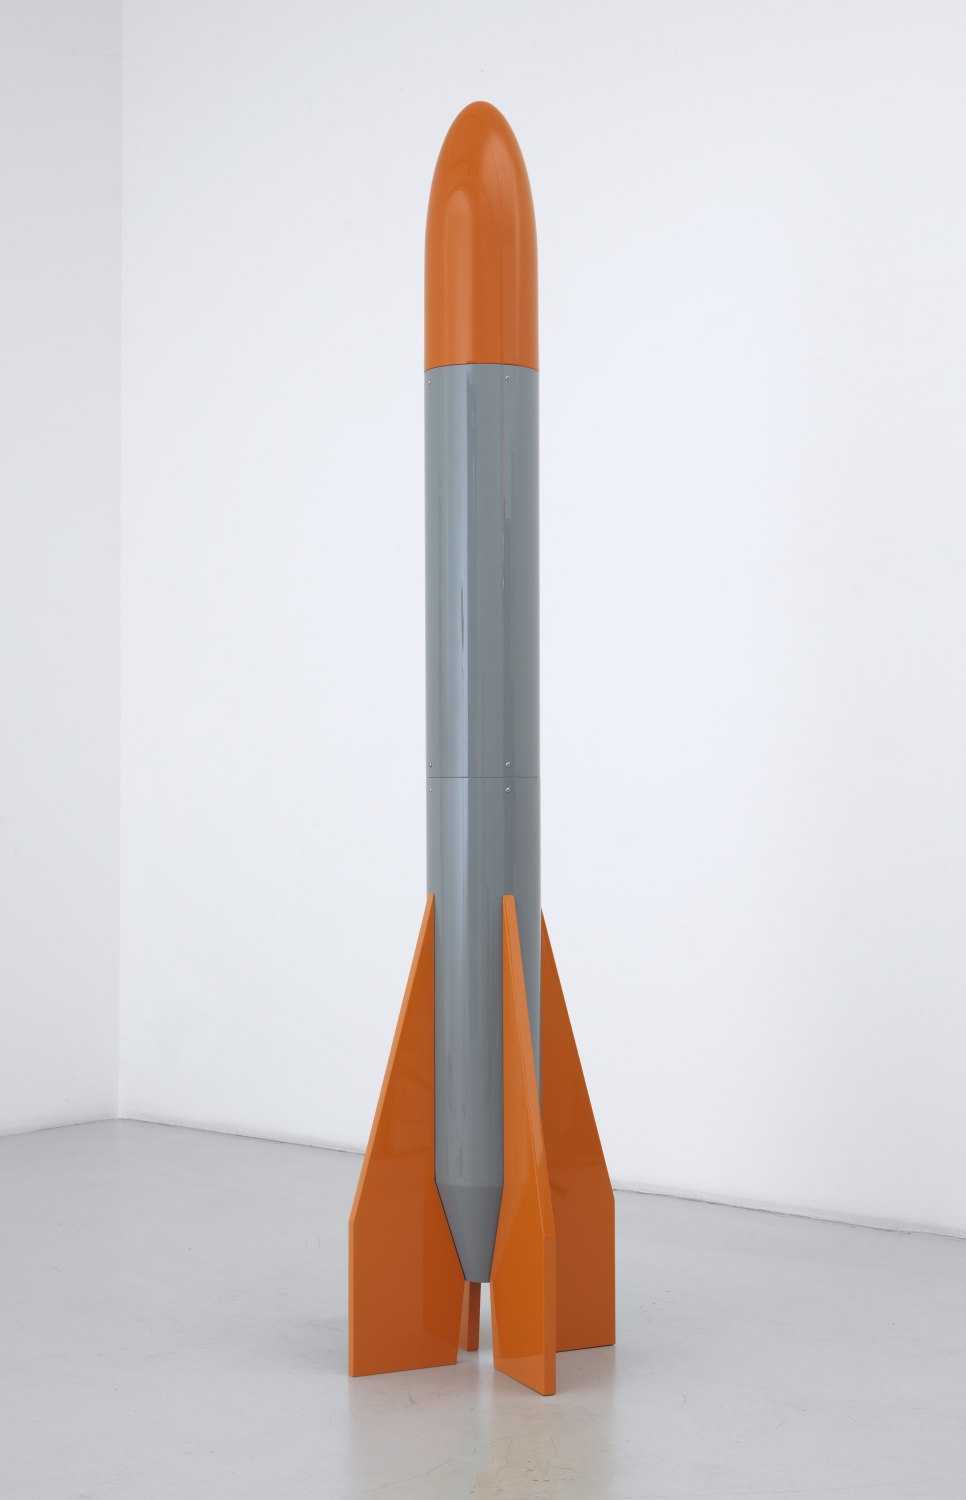 Cosima von Bonin   Untitled, 2012    Steel, plastic and lacquer,  250 × ∅ 57.2 cm    